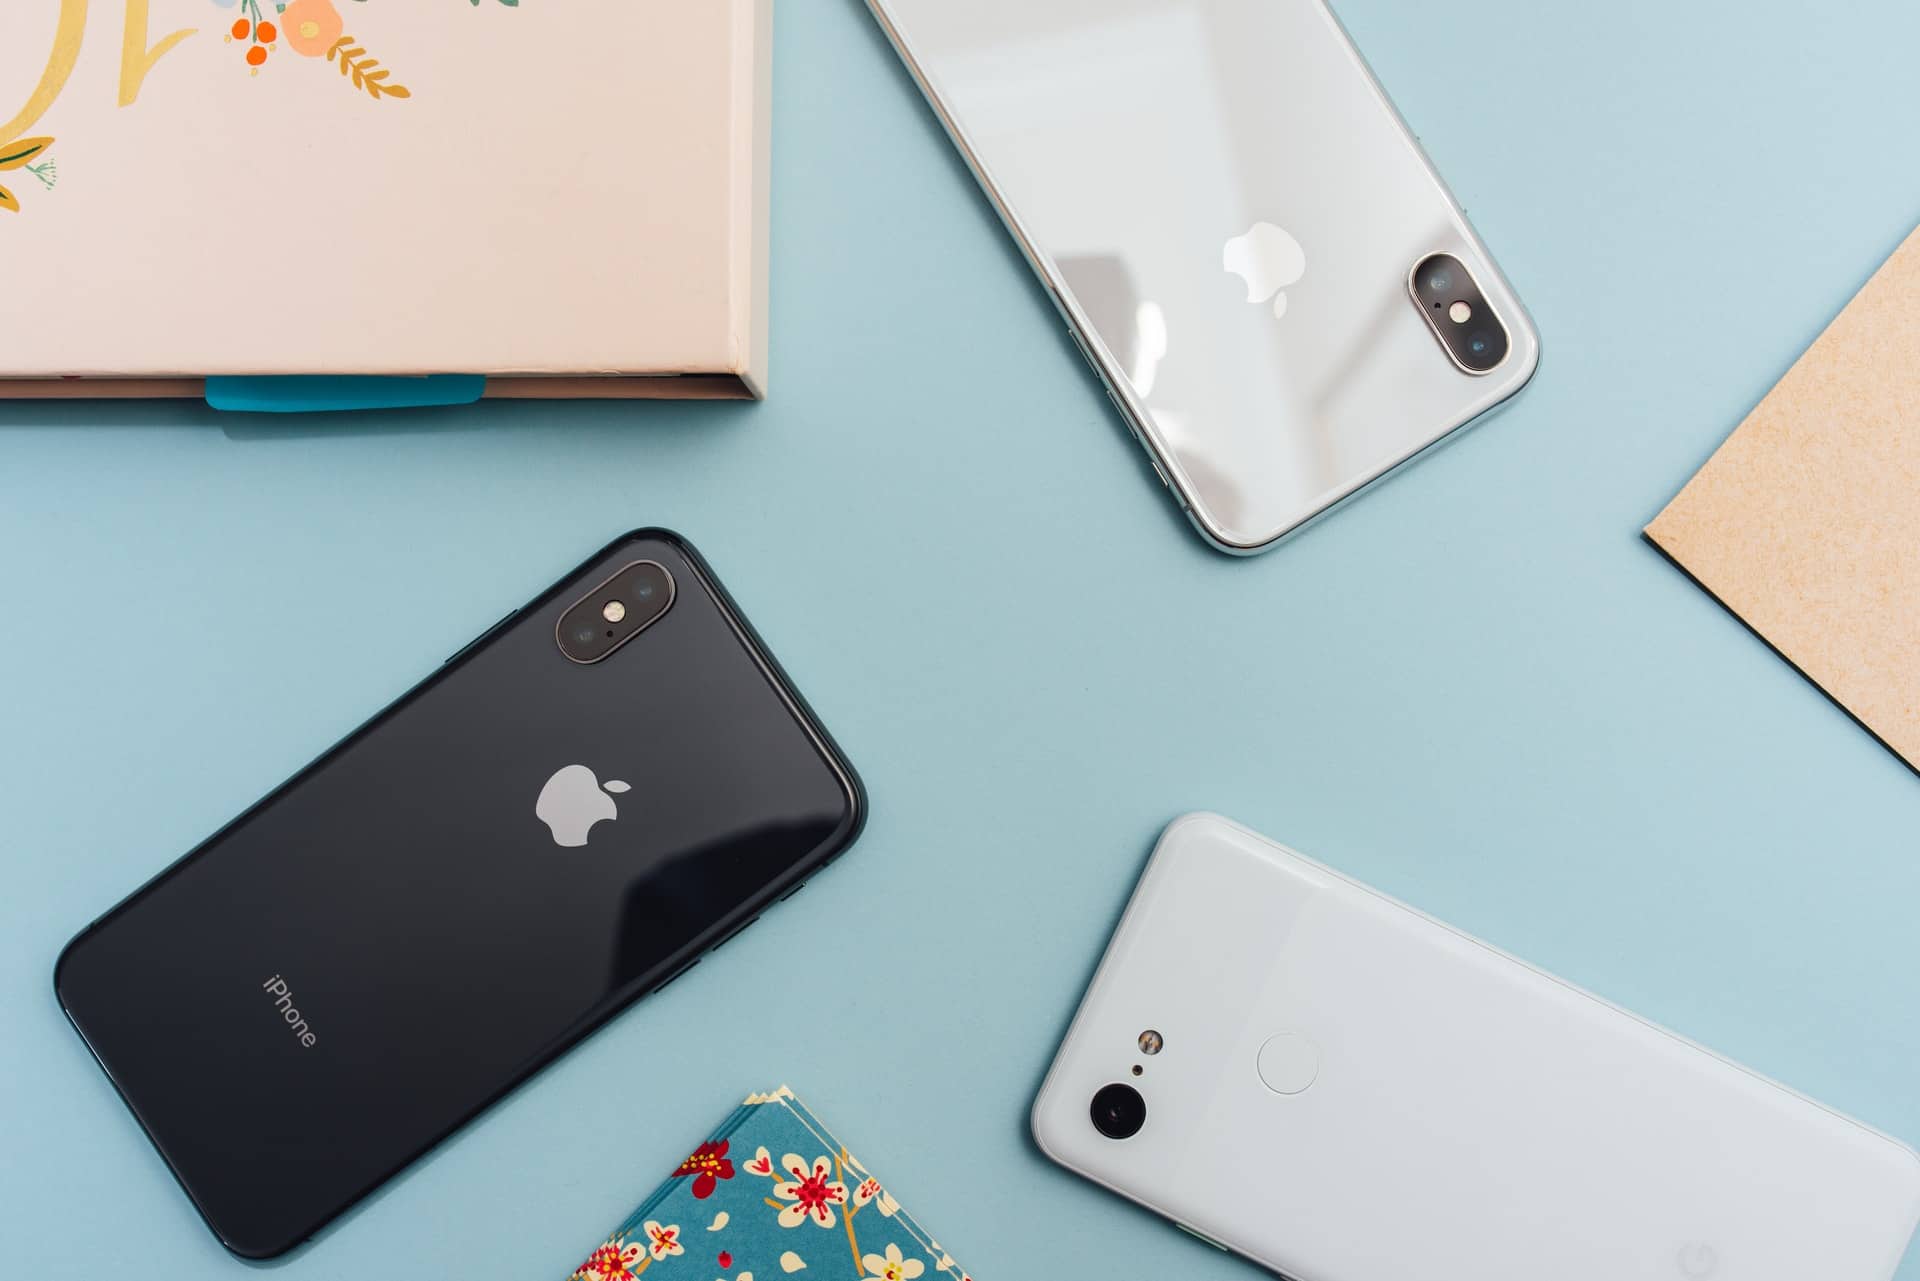 Lire la suite à propos de l’article iPhone 12 et Black Friday : quelles promotions pour les téléphones Apple ?